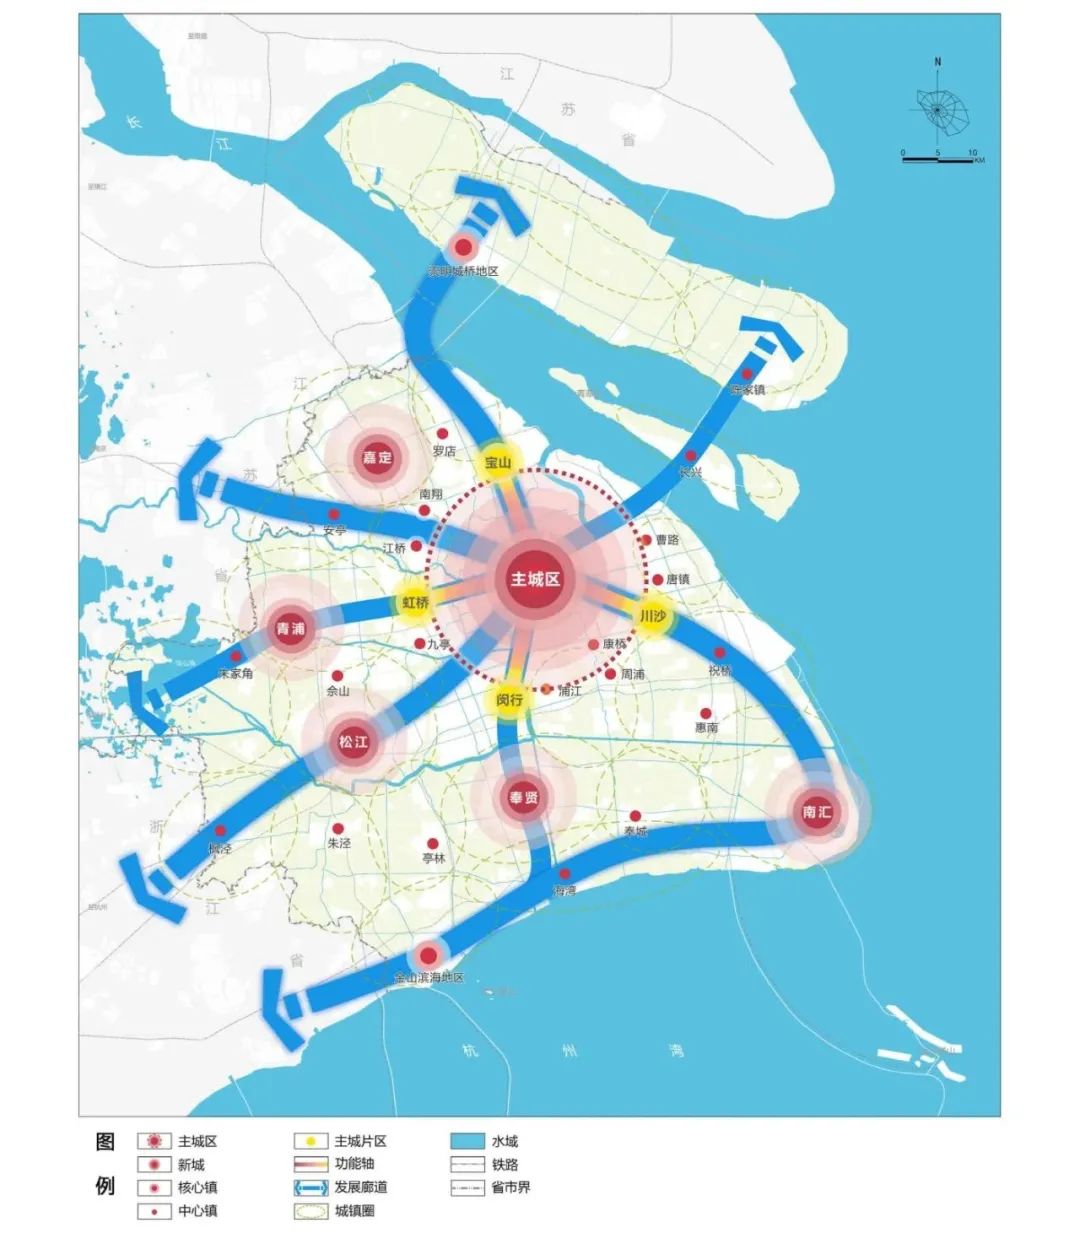 国土空间规划体系：上海市国土空间总体规划体系及各级案例分享